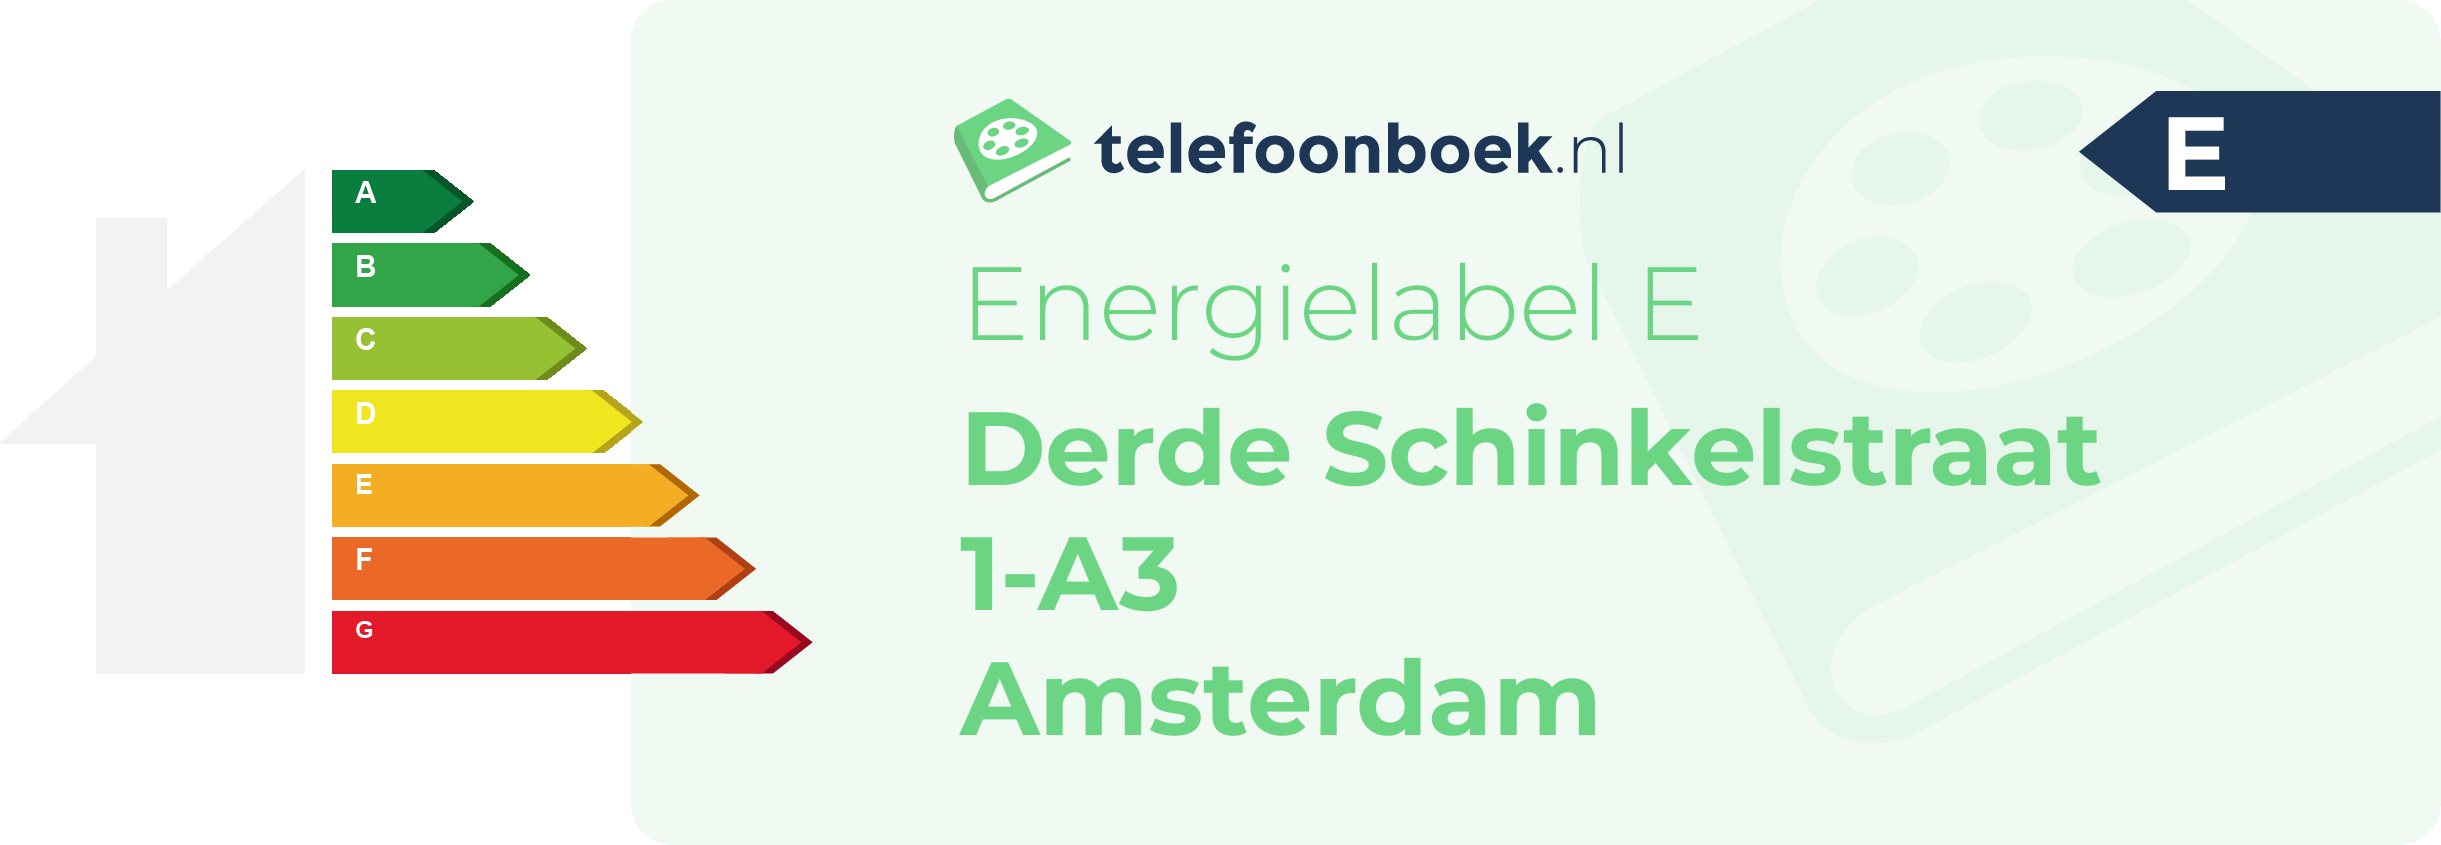 Energielabel Derde Schinkelstraat 1-A3 Amsterdam